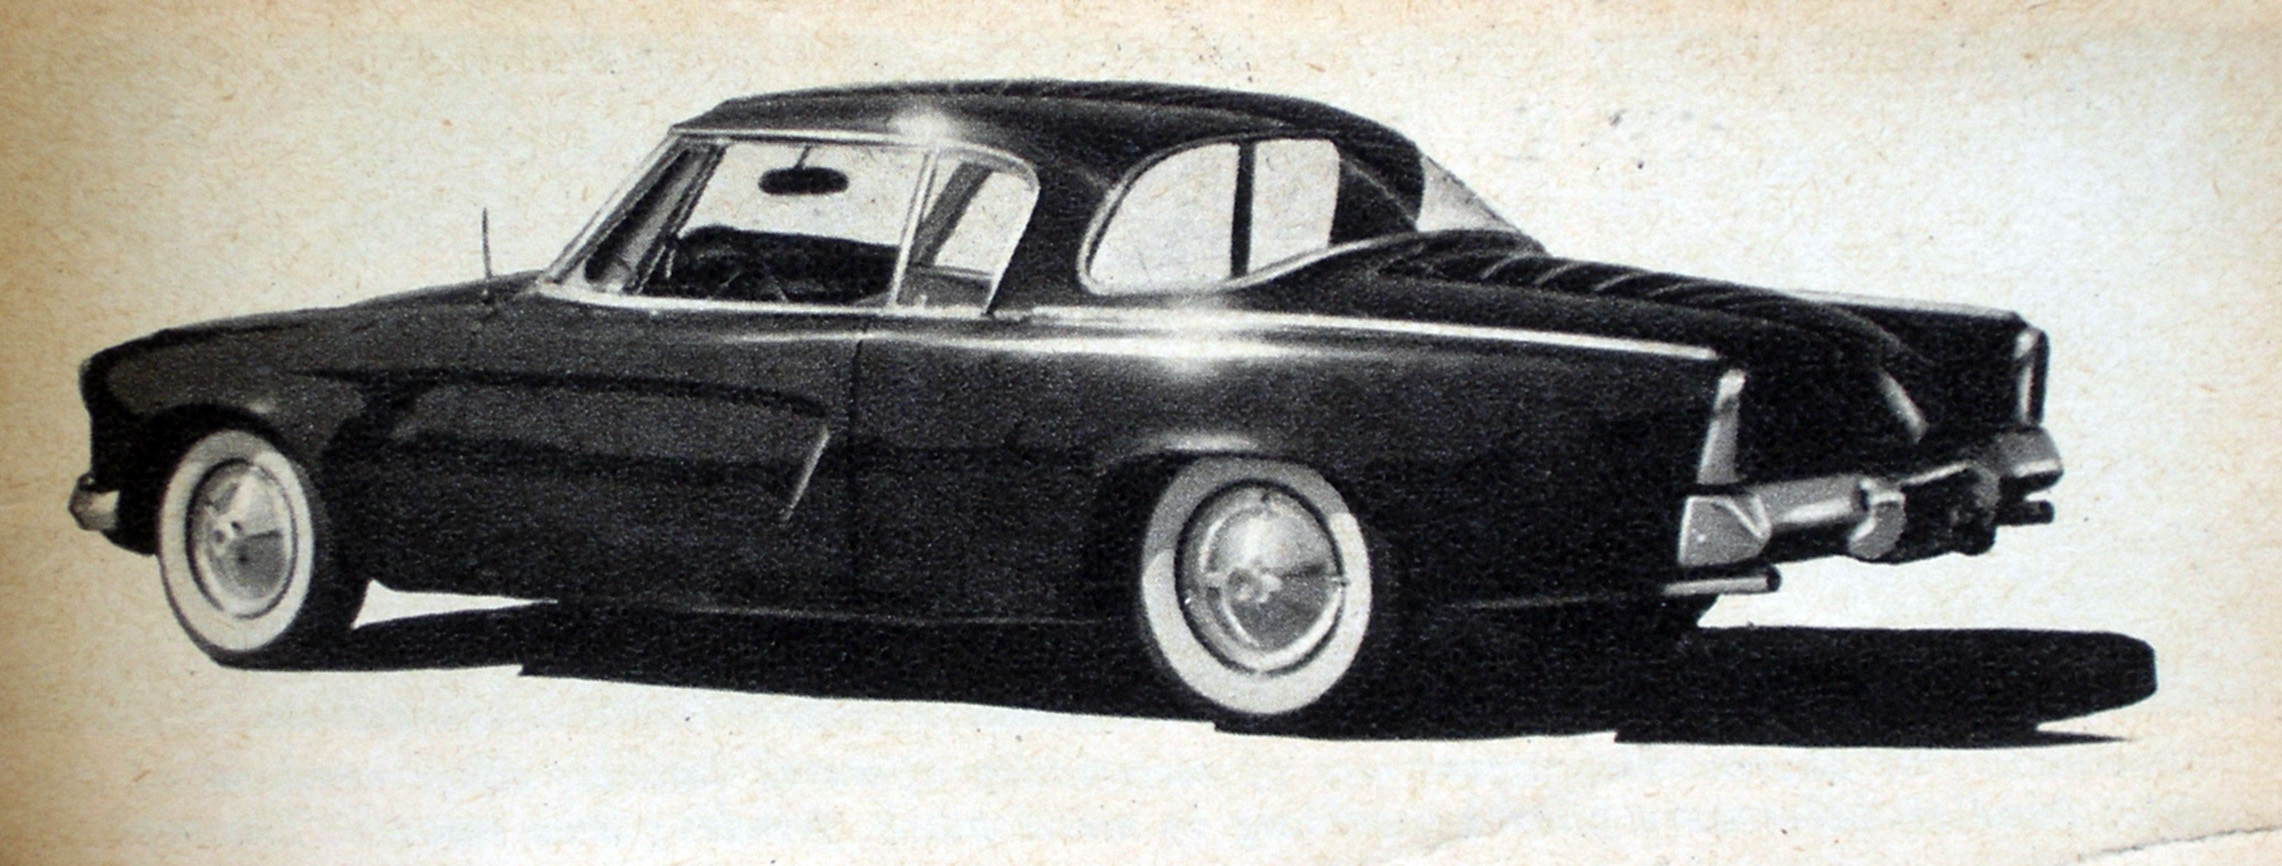 1953 Studebaker #8